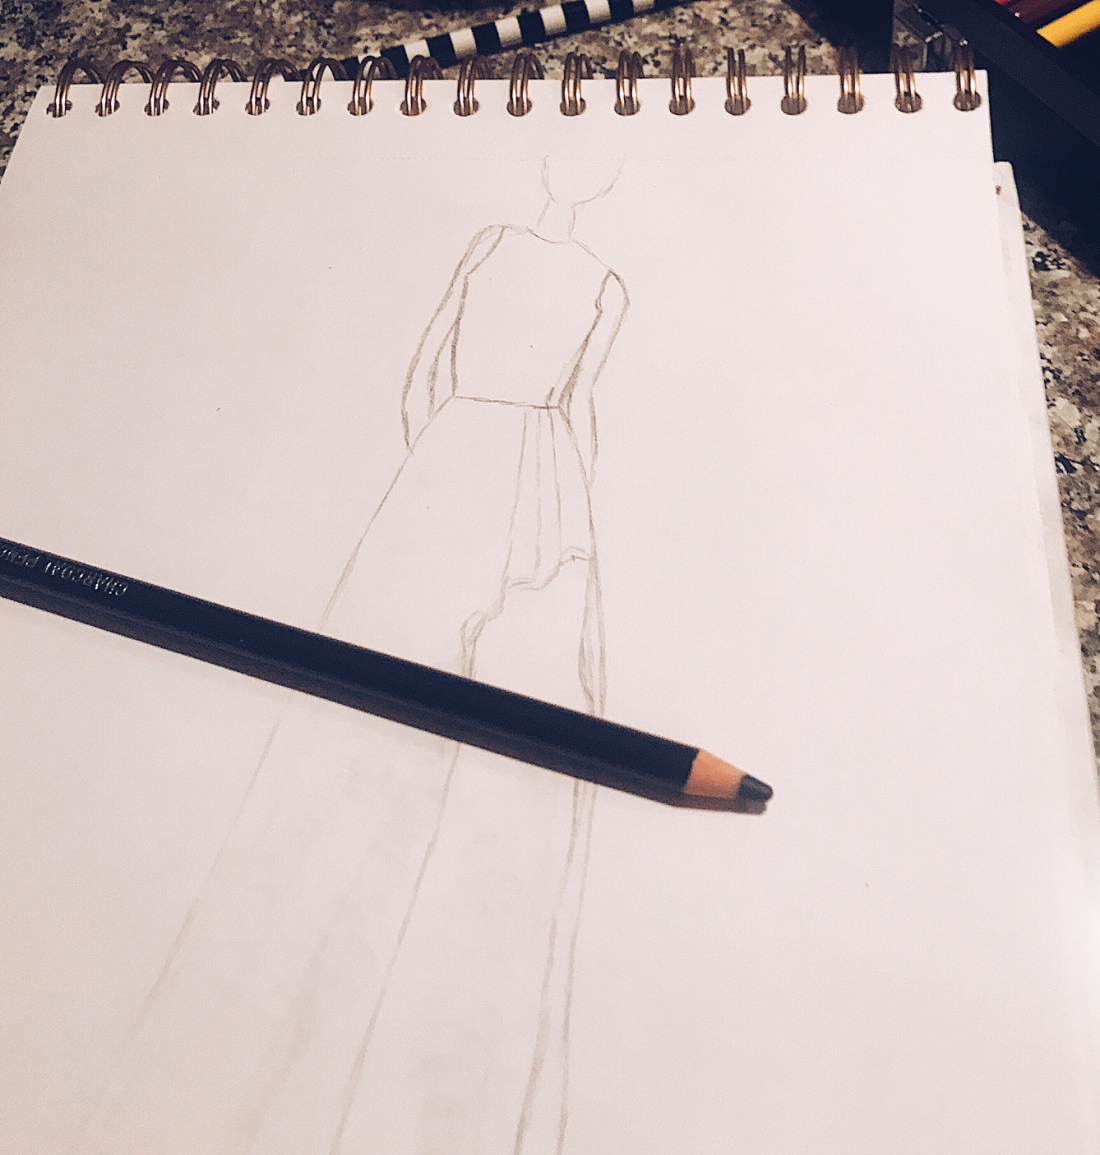 dress outline sketch